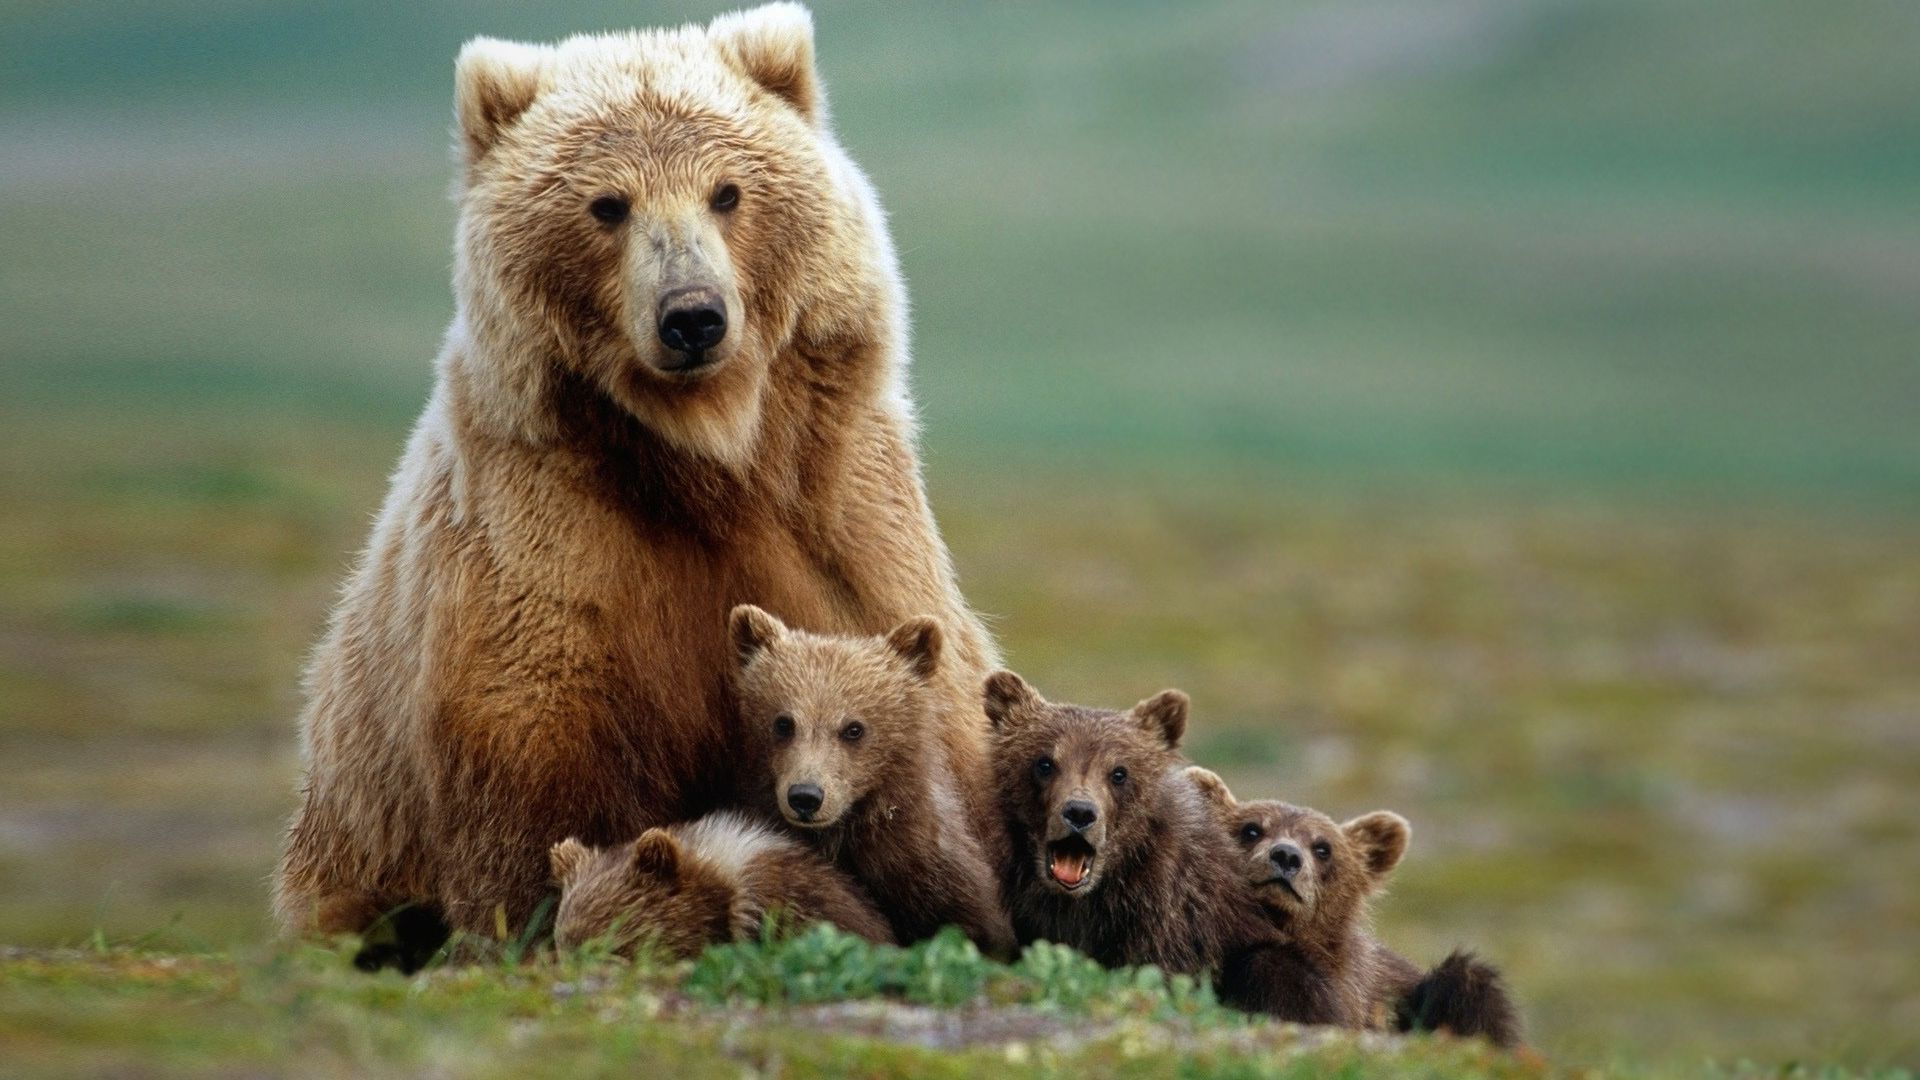 fondos de pantalla de barba hd,oso café,animal terrestre,oso grizzly,oso,fauna silvestre